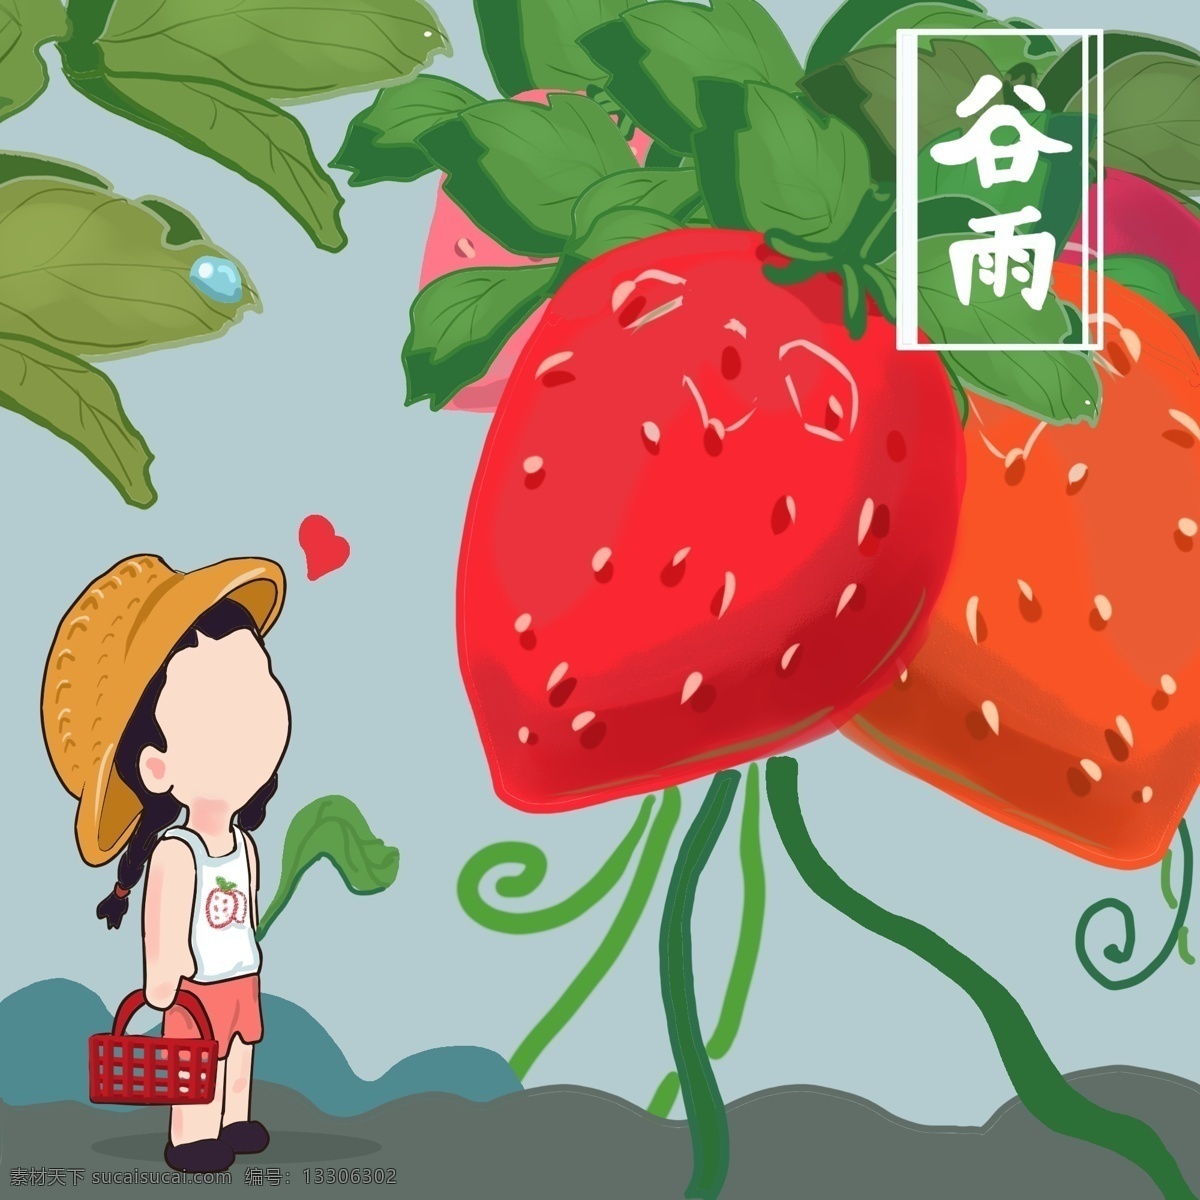 清新 可爱 草莓 谷雨 节气 元素 卡通形象 植物 水滴 节气元素 灰色地板 种植物